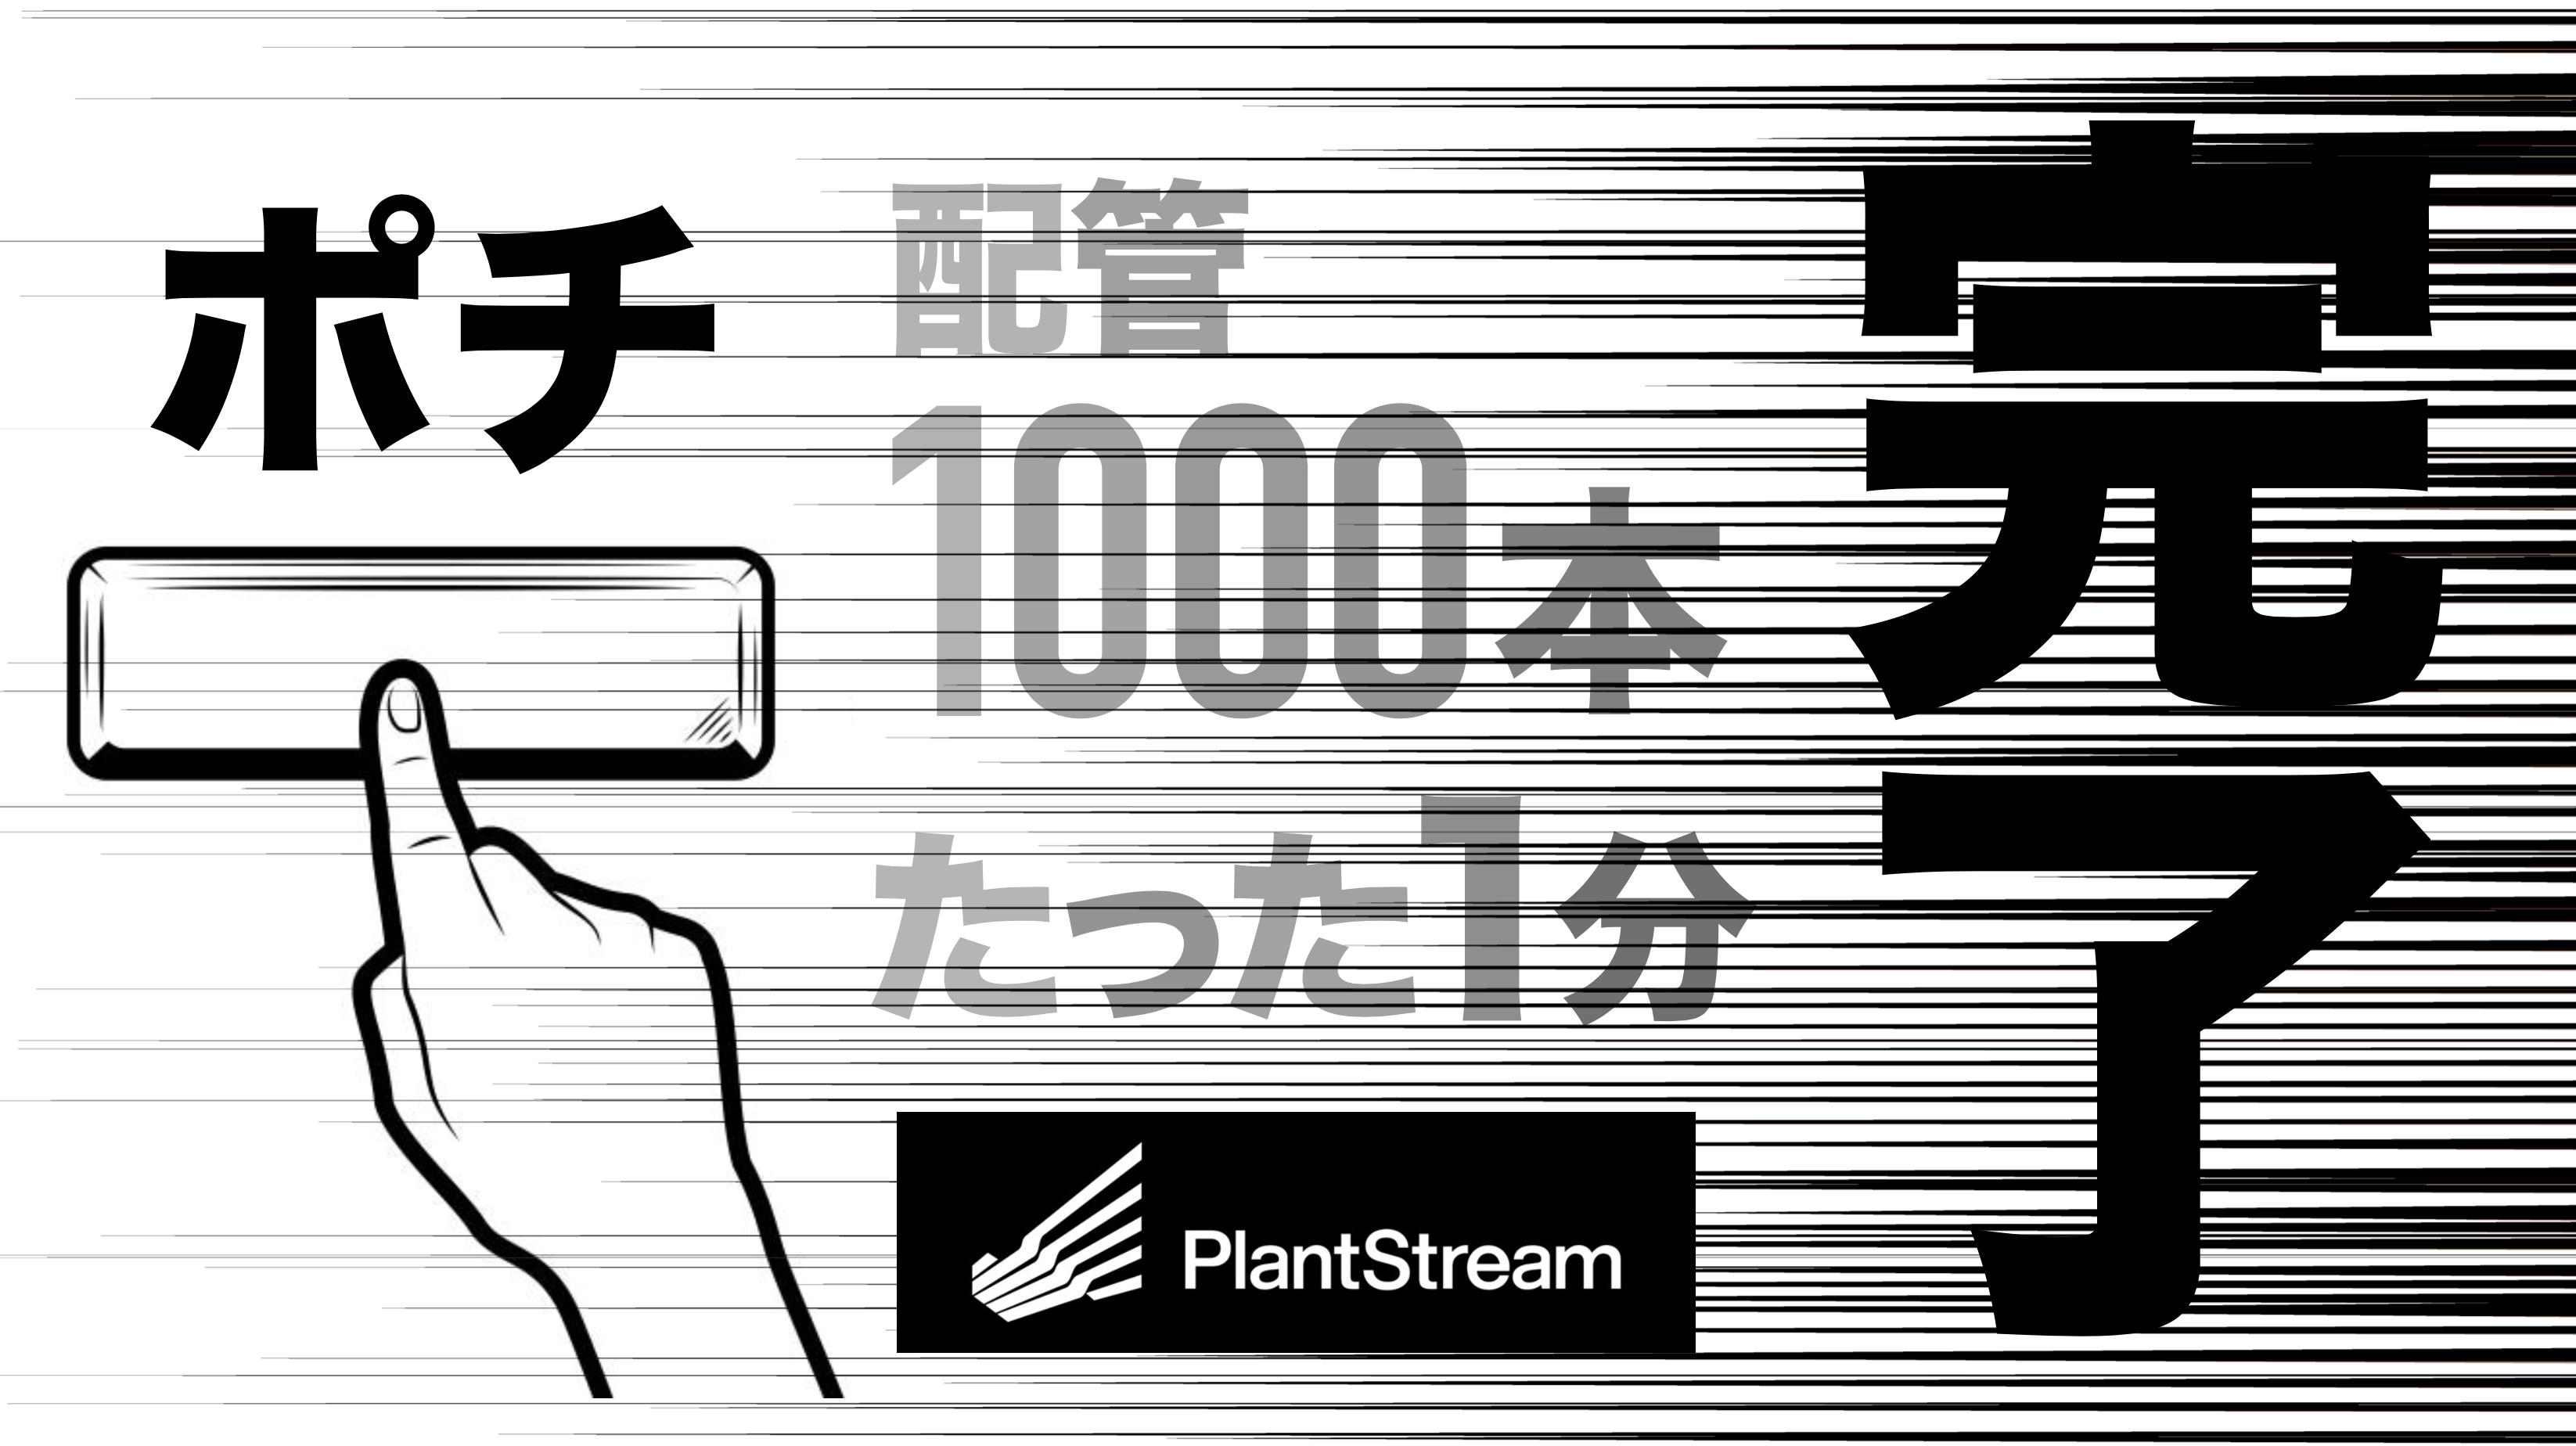 奇跡は１分で起こせた！新米でも配管1000本を瞬間設計できる天才CAD、それが【PlantStream®】だ。